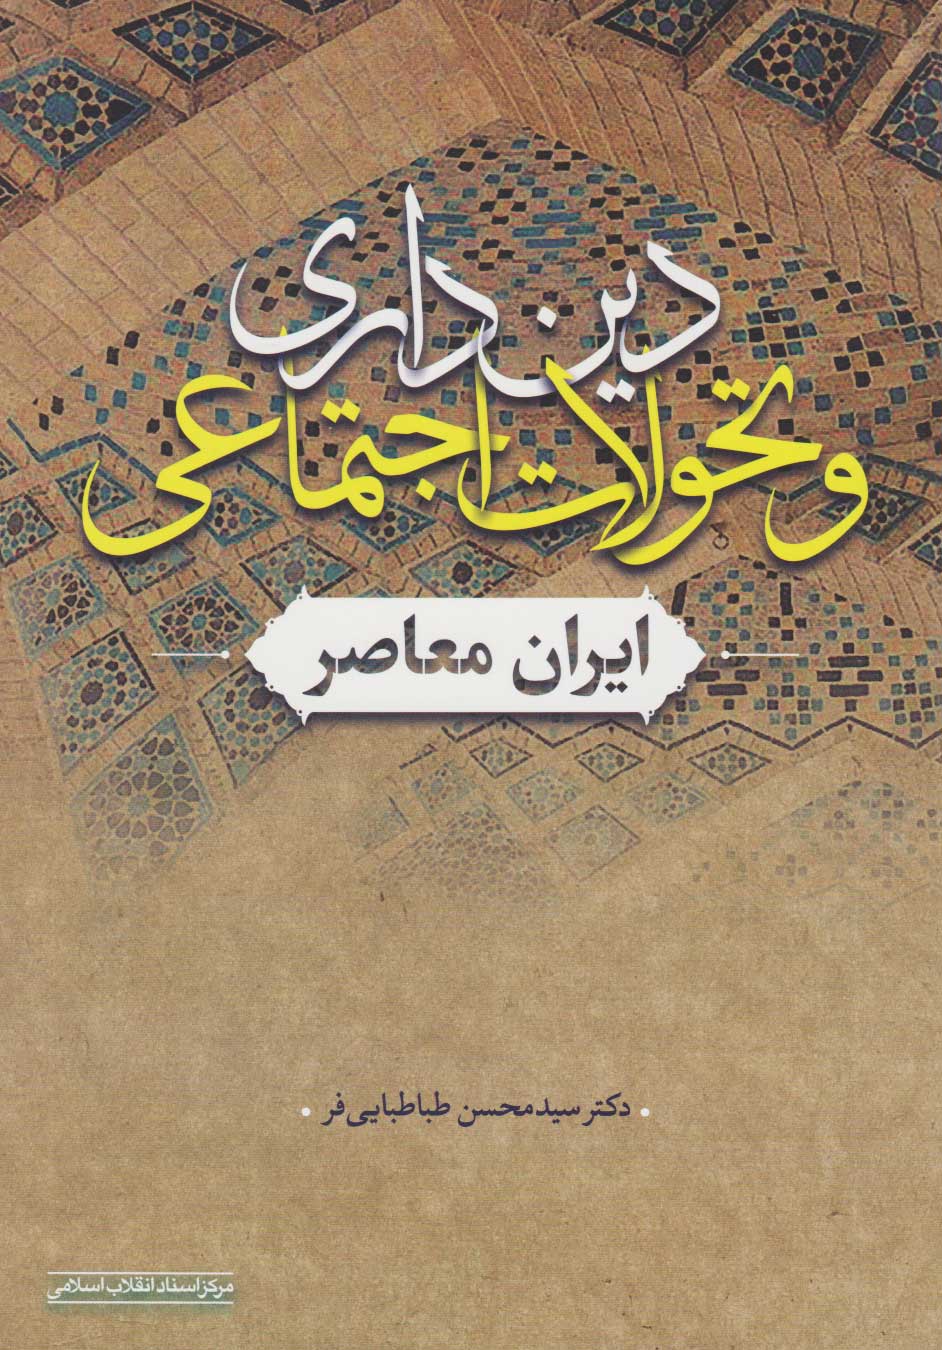  کتاب دین داری و تحولات اجتماعی ایران معاصر